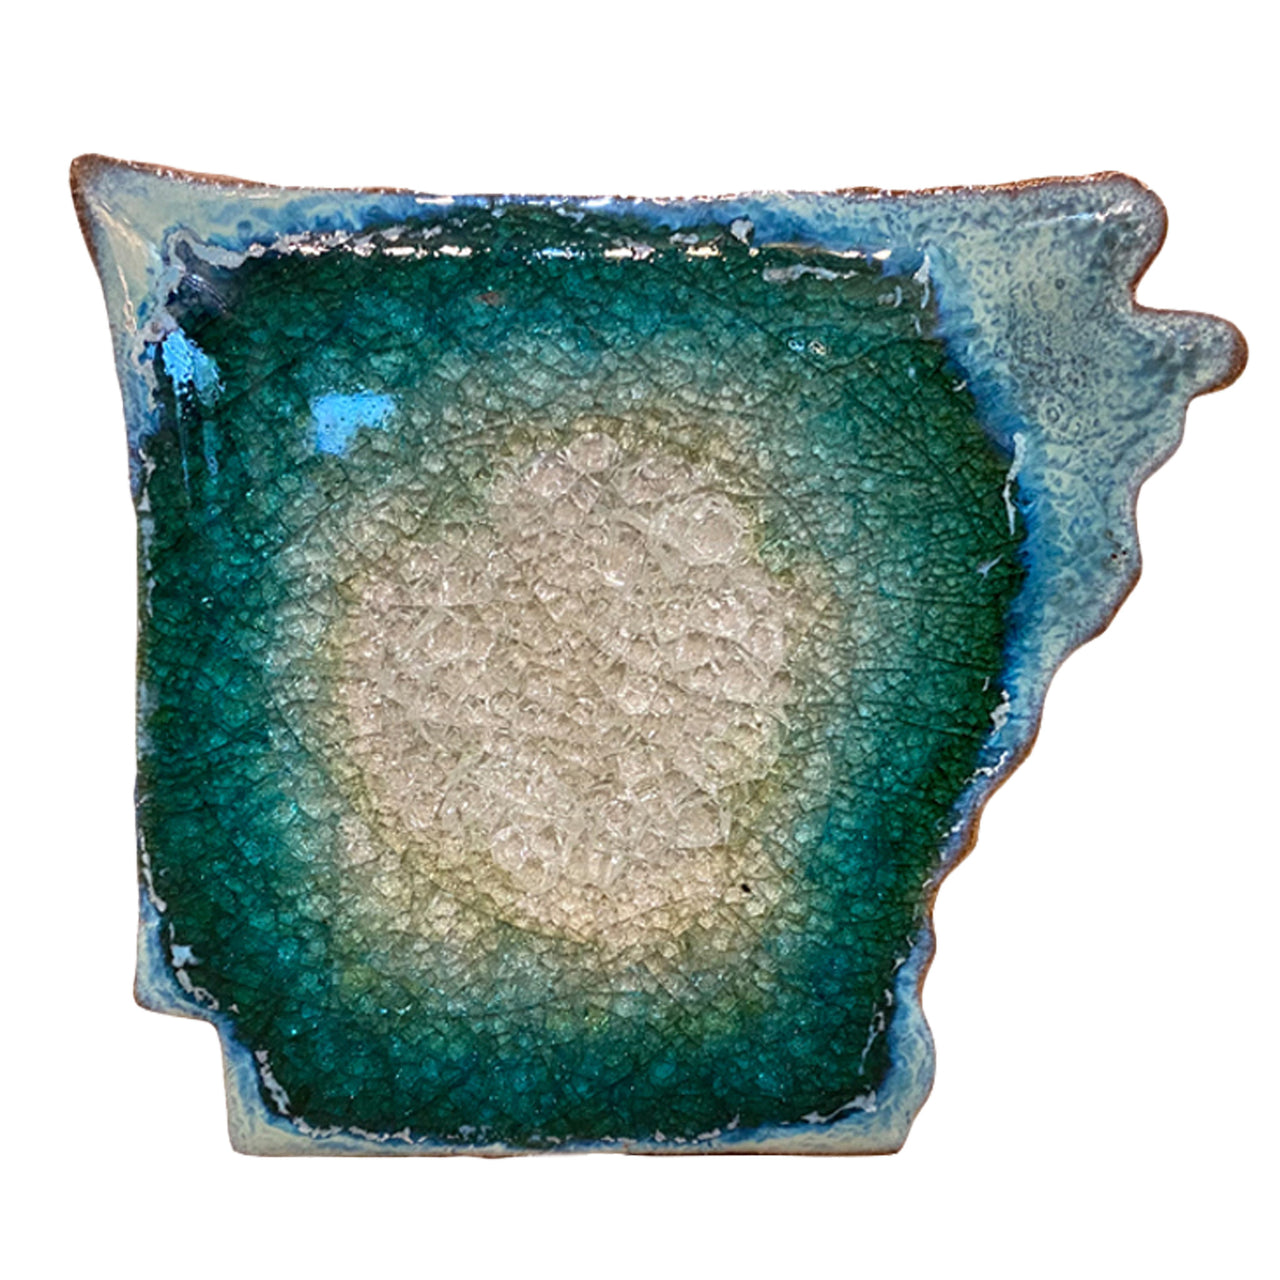 Arkansas Coaster | Textured Turquoise